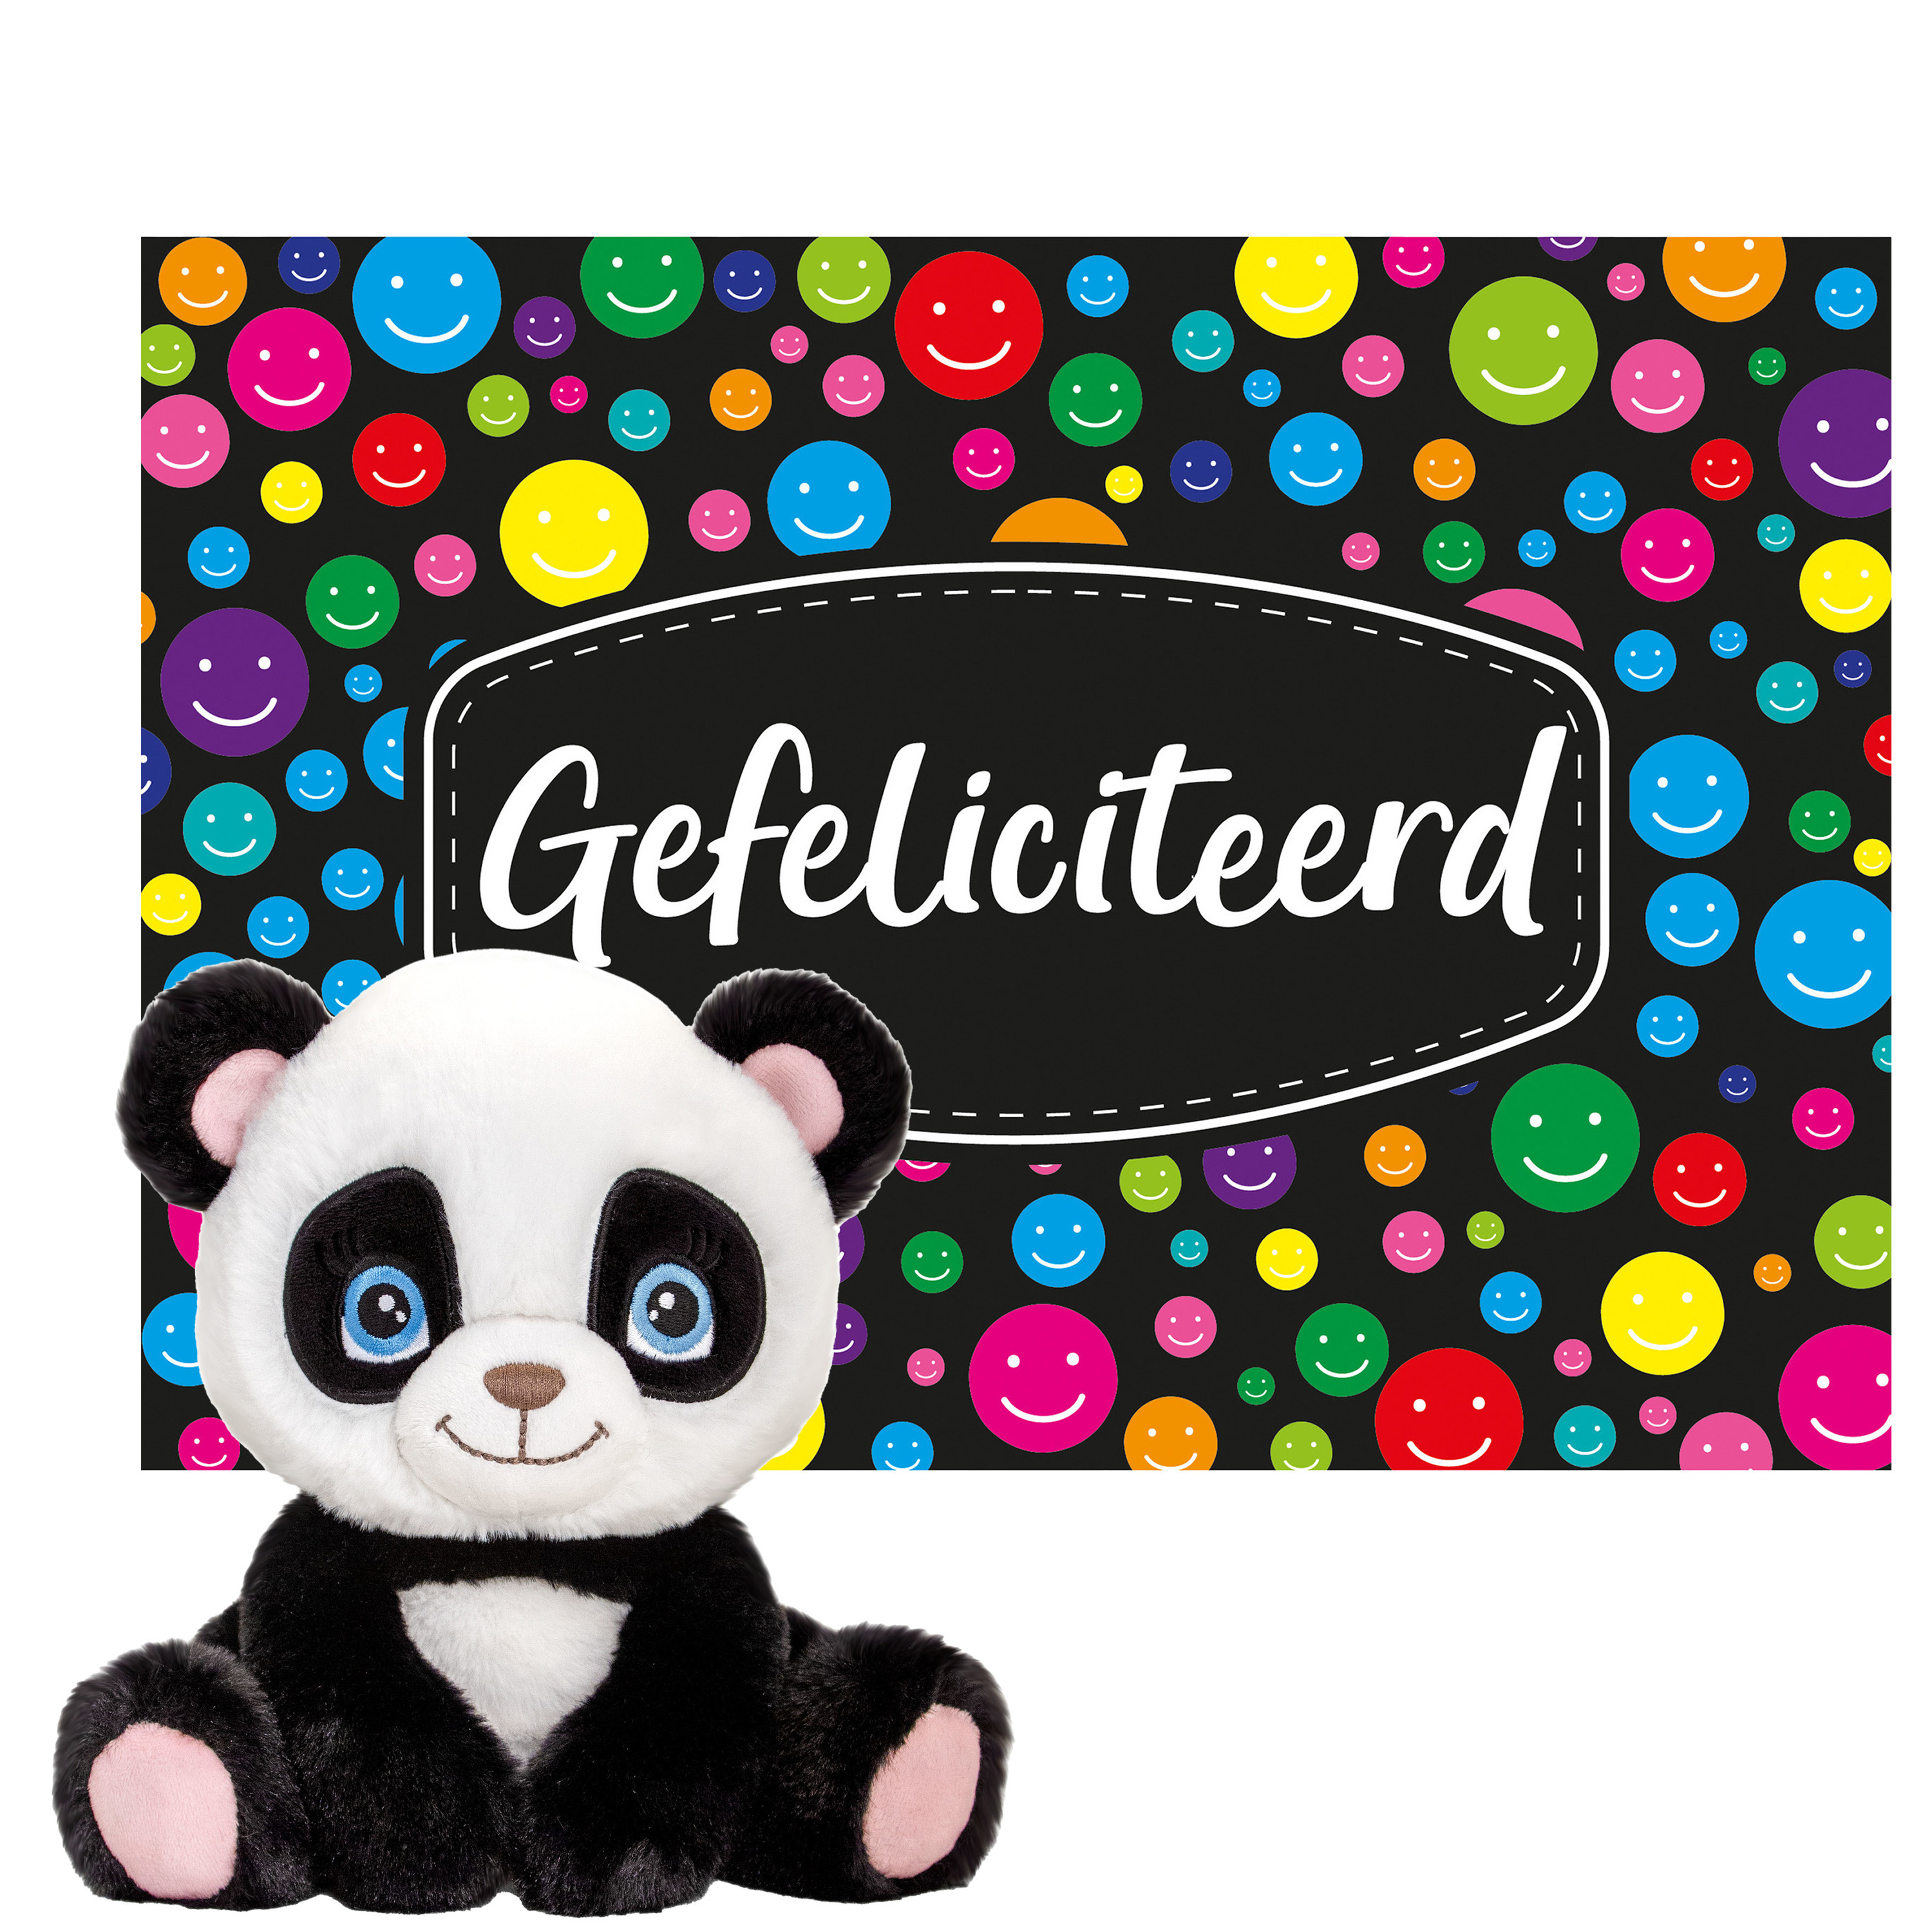 Keel toys Cadeaukaart Gefeliciteerd met knuffeldier panda beer 25 cm